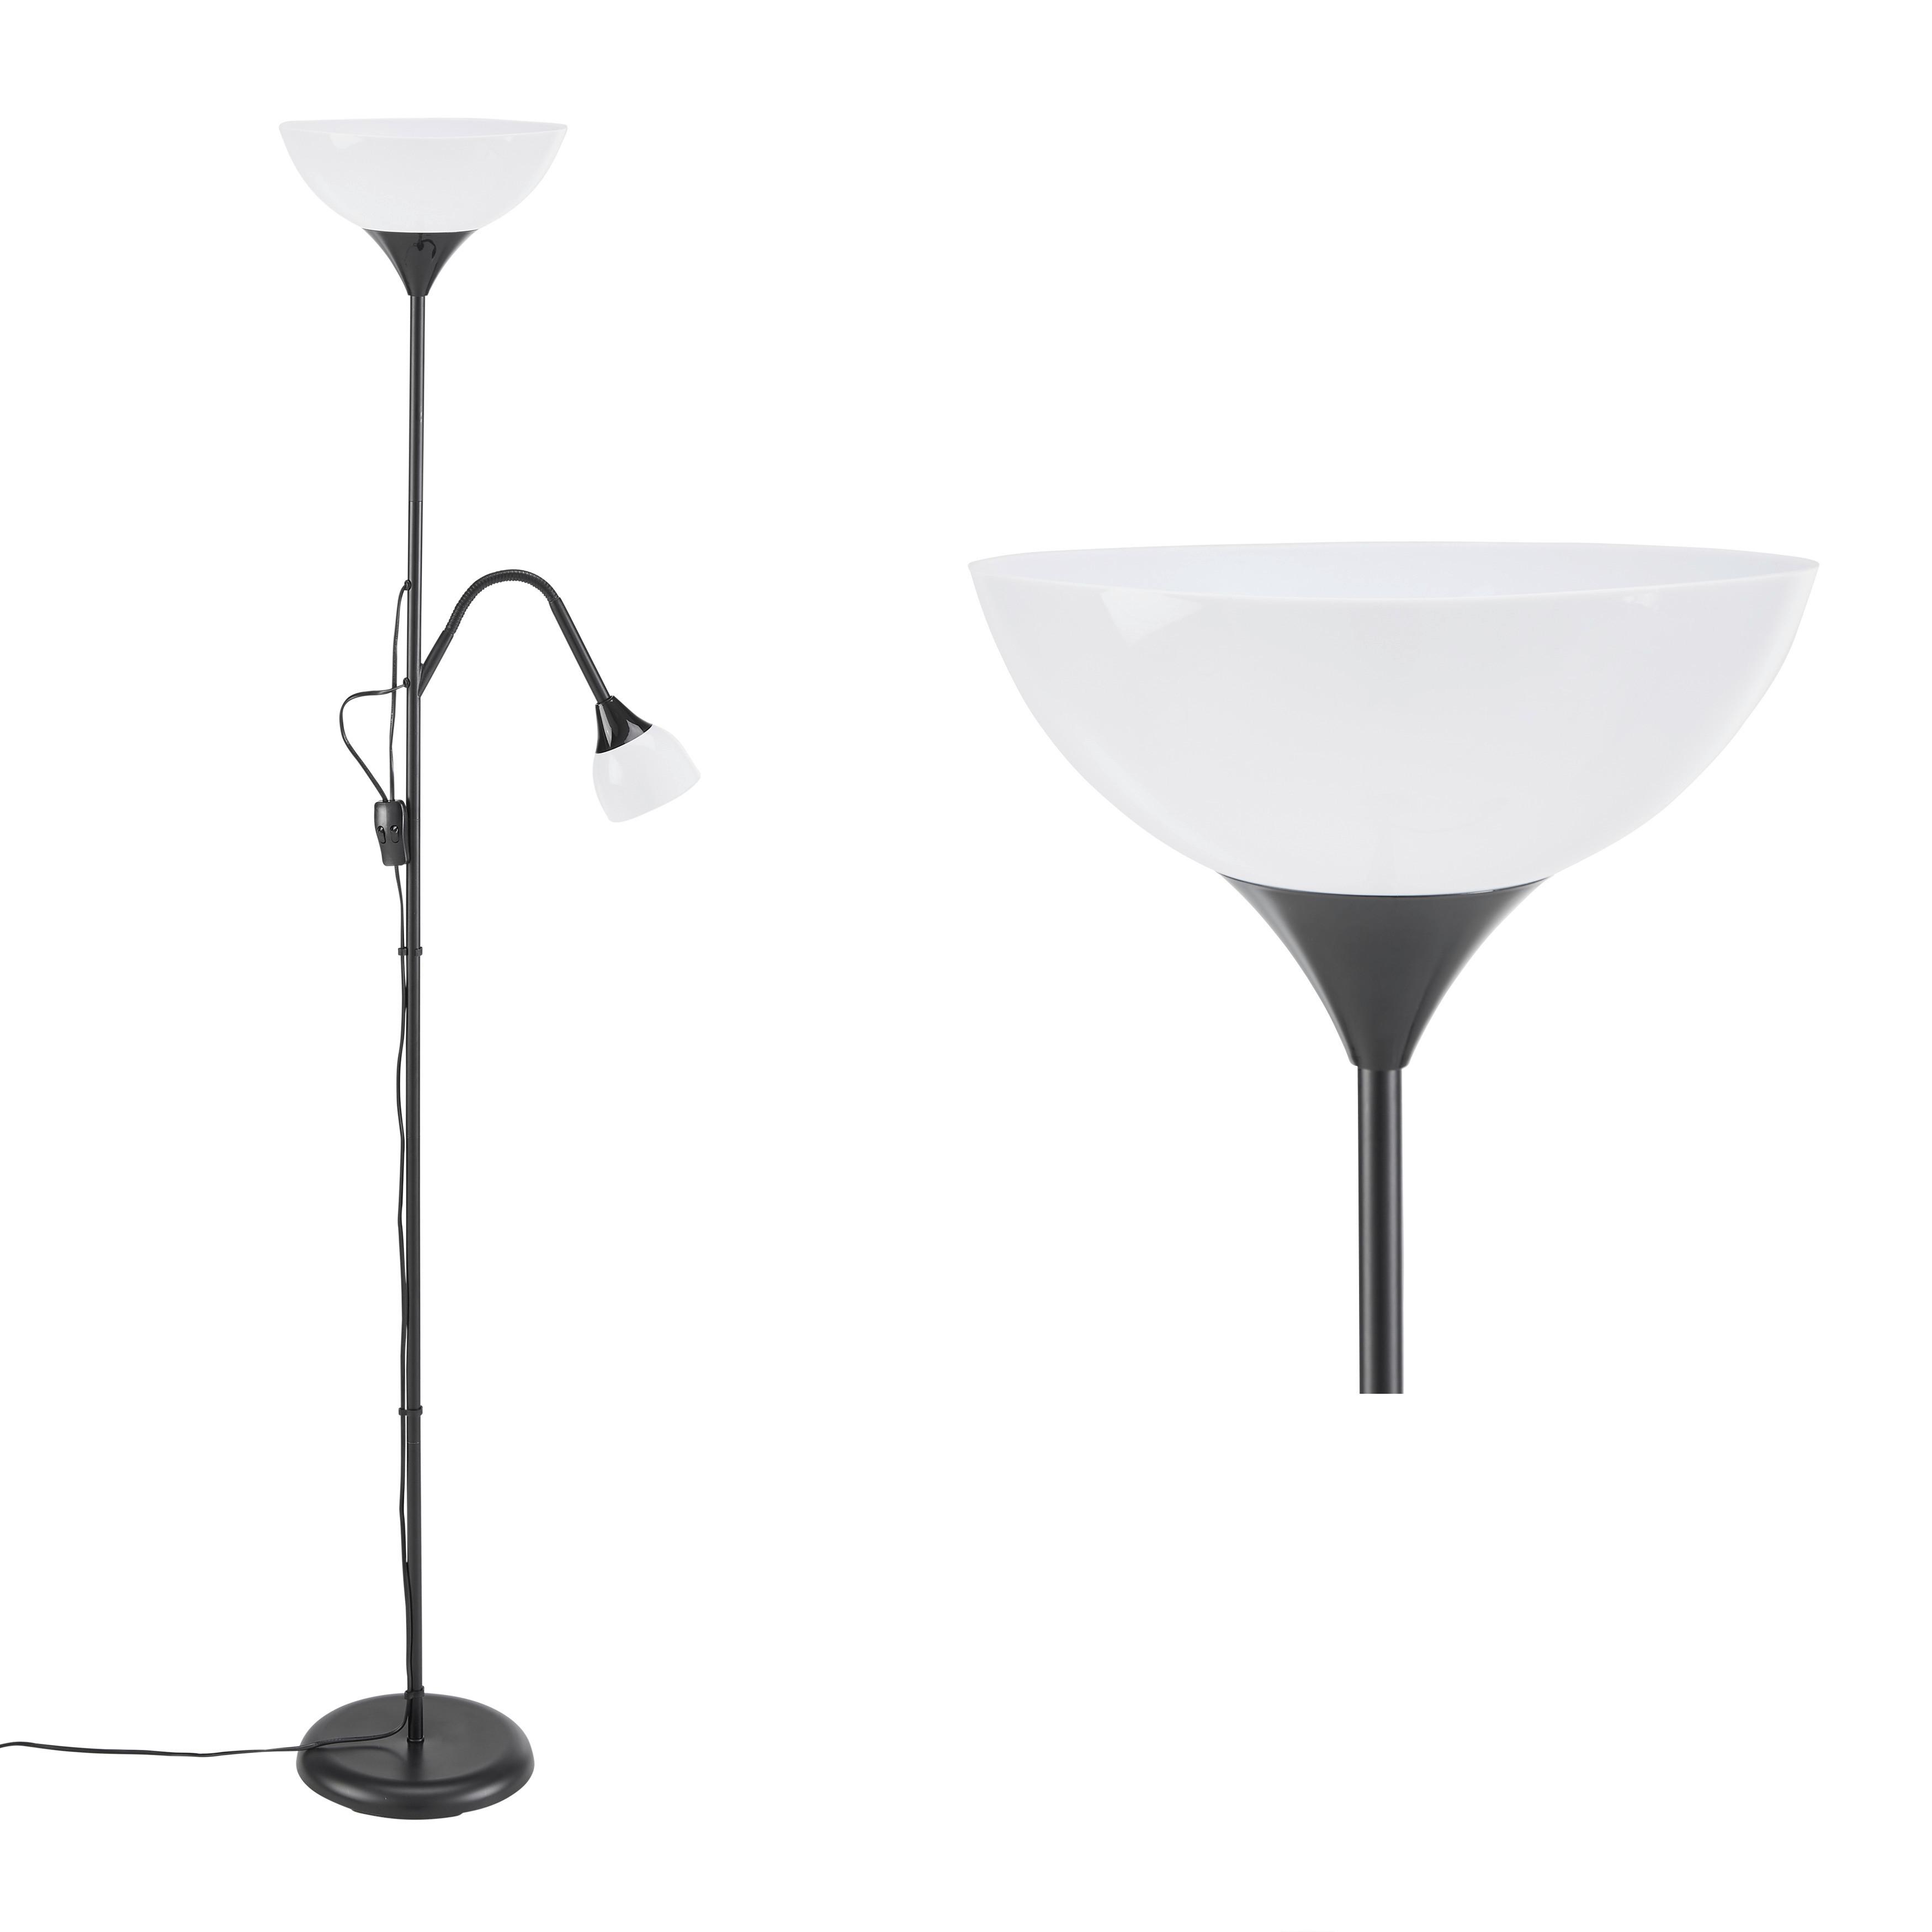 Stojací Lampa Vanessa 60 Watt, V: 180cm - bílá/černá, Konvenční, kov/plast (24/180cm) - Based